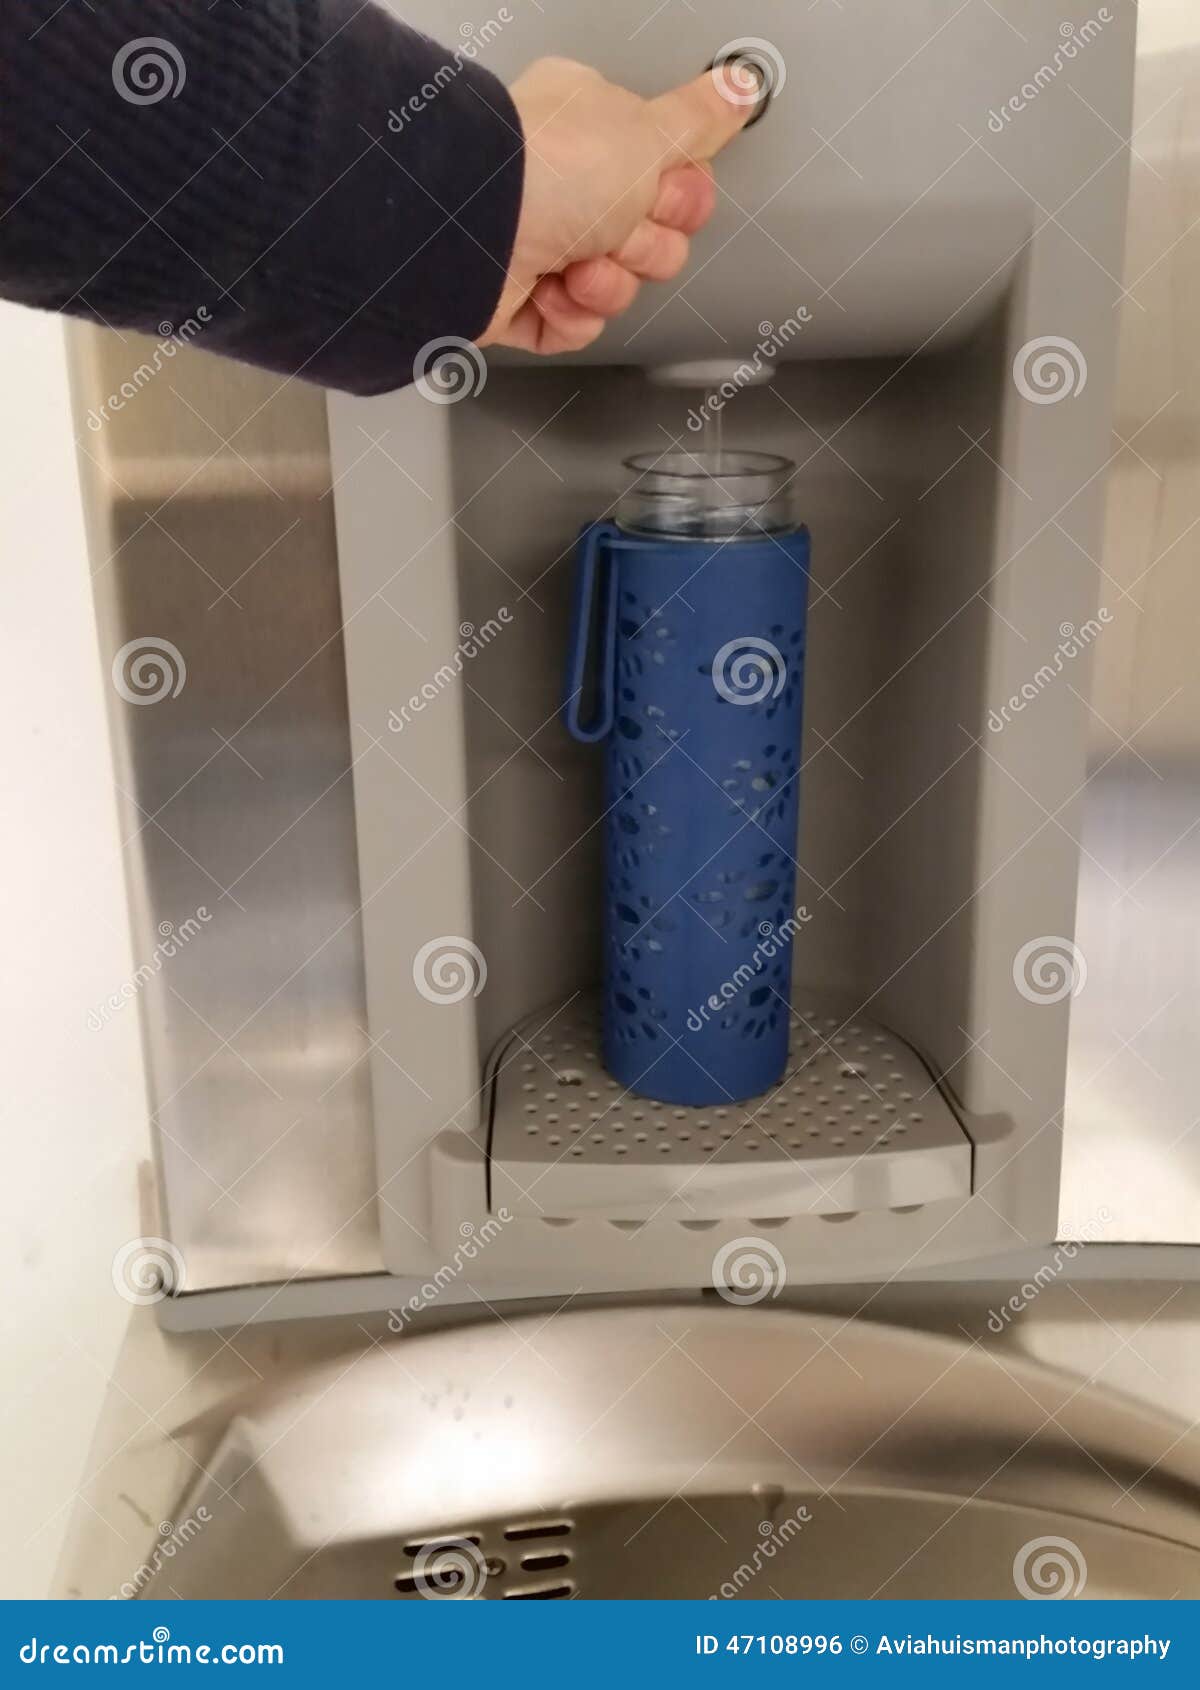 filling a water bottle